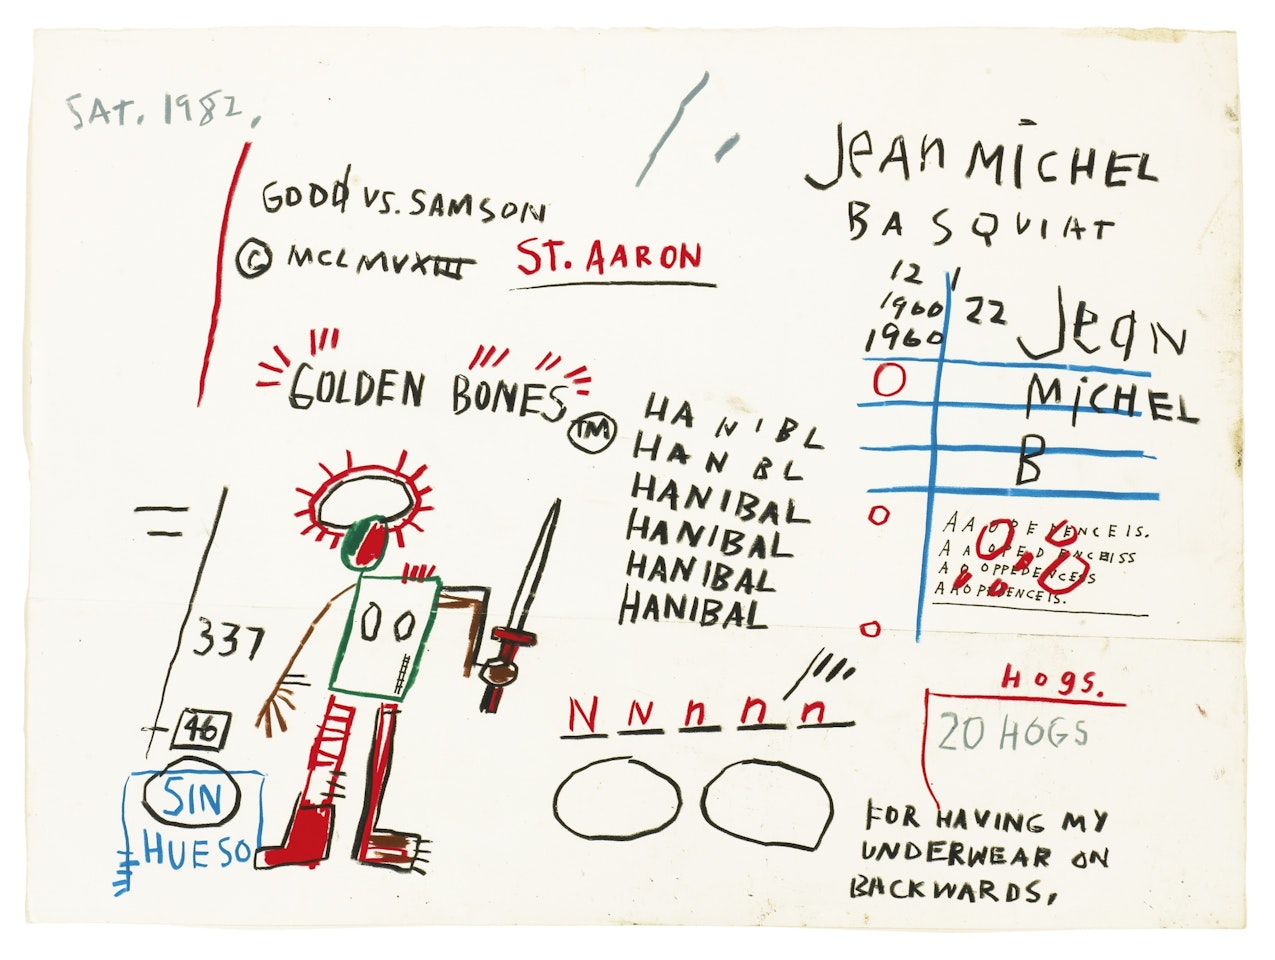 GOLDEN BONES by Jean-Michel Basquiat